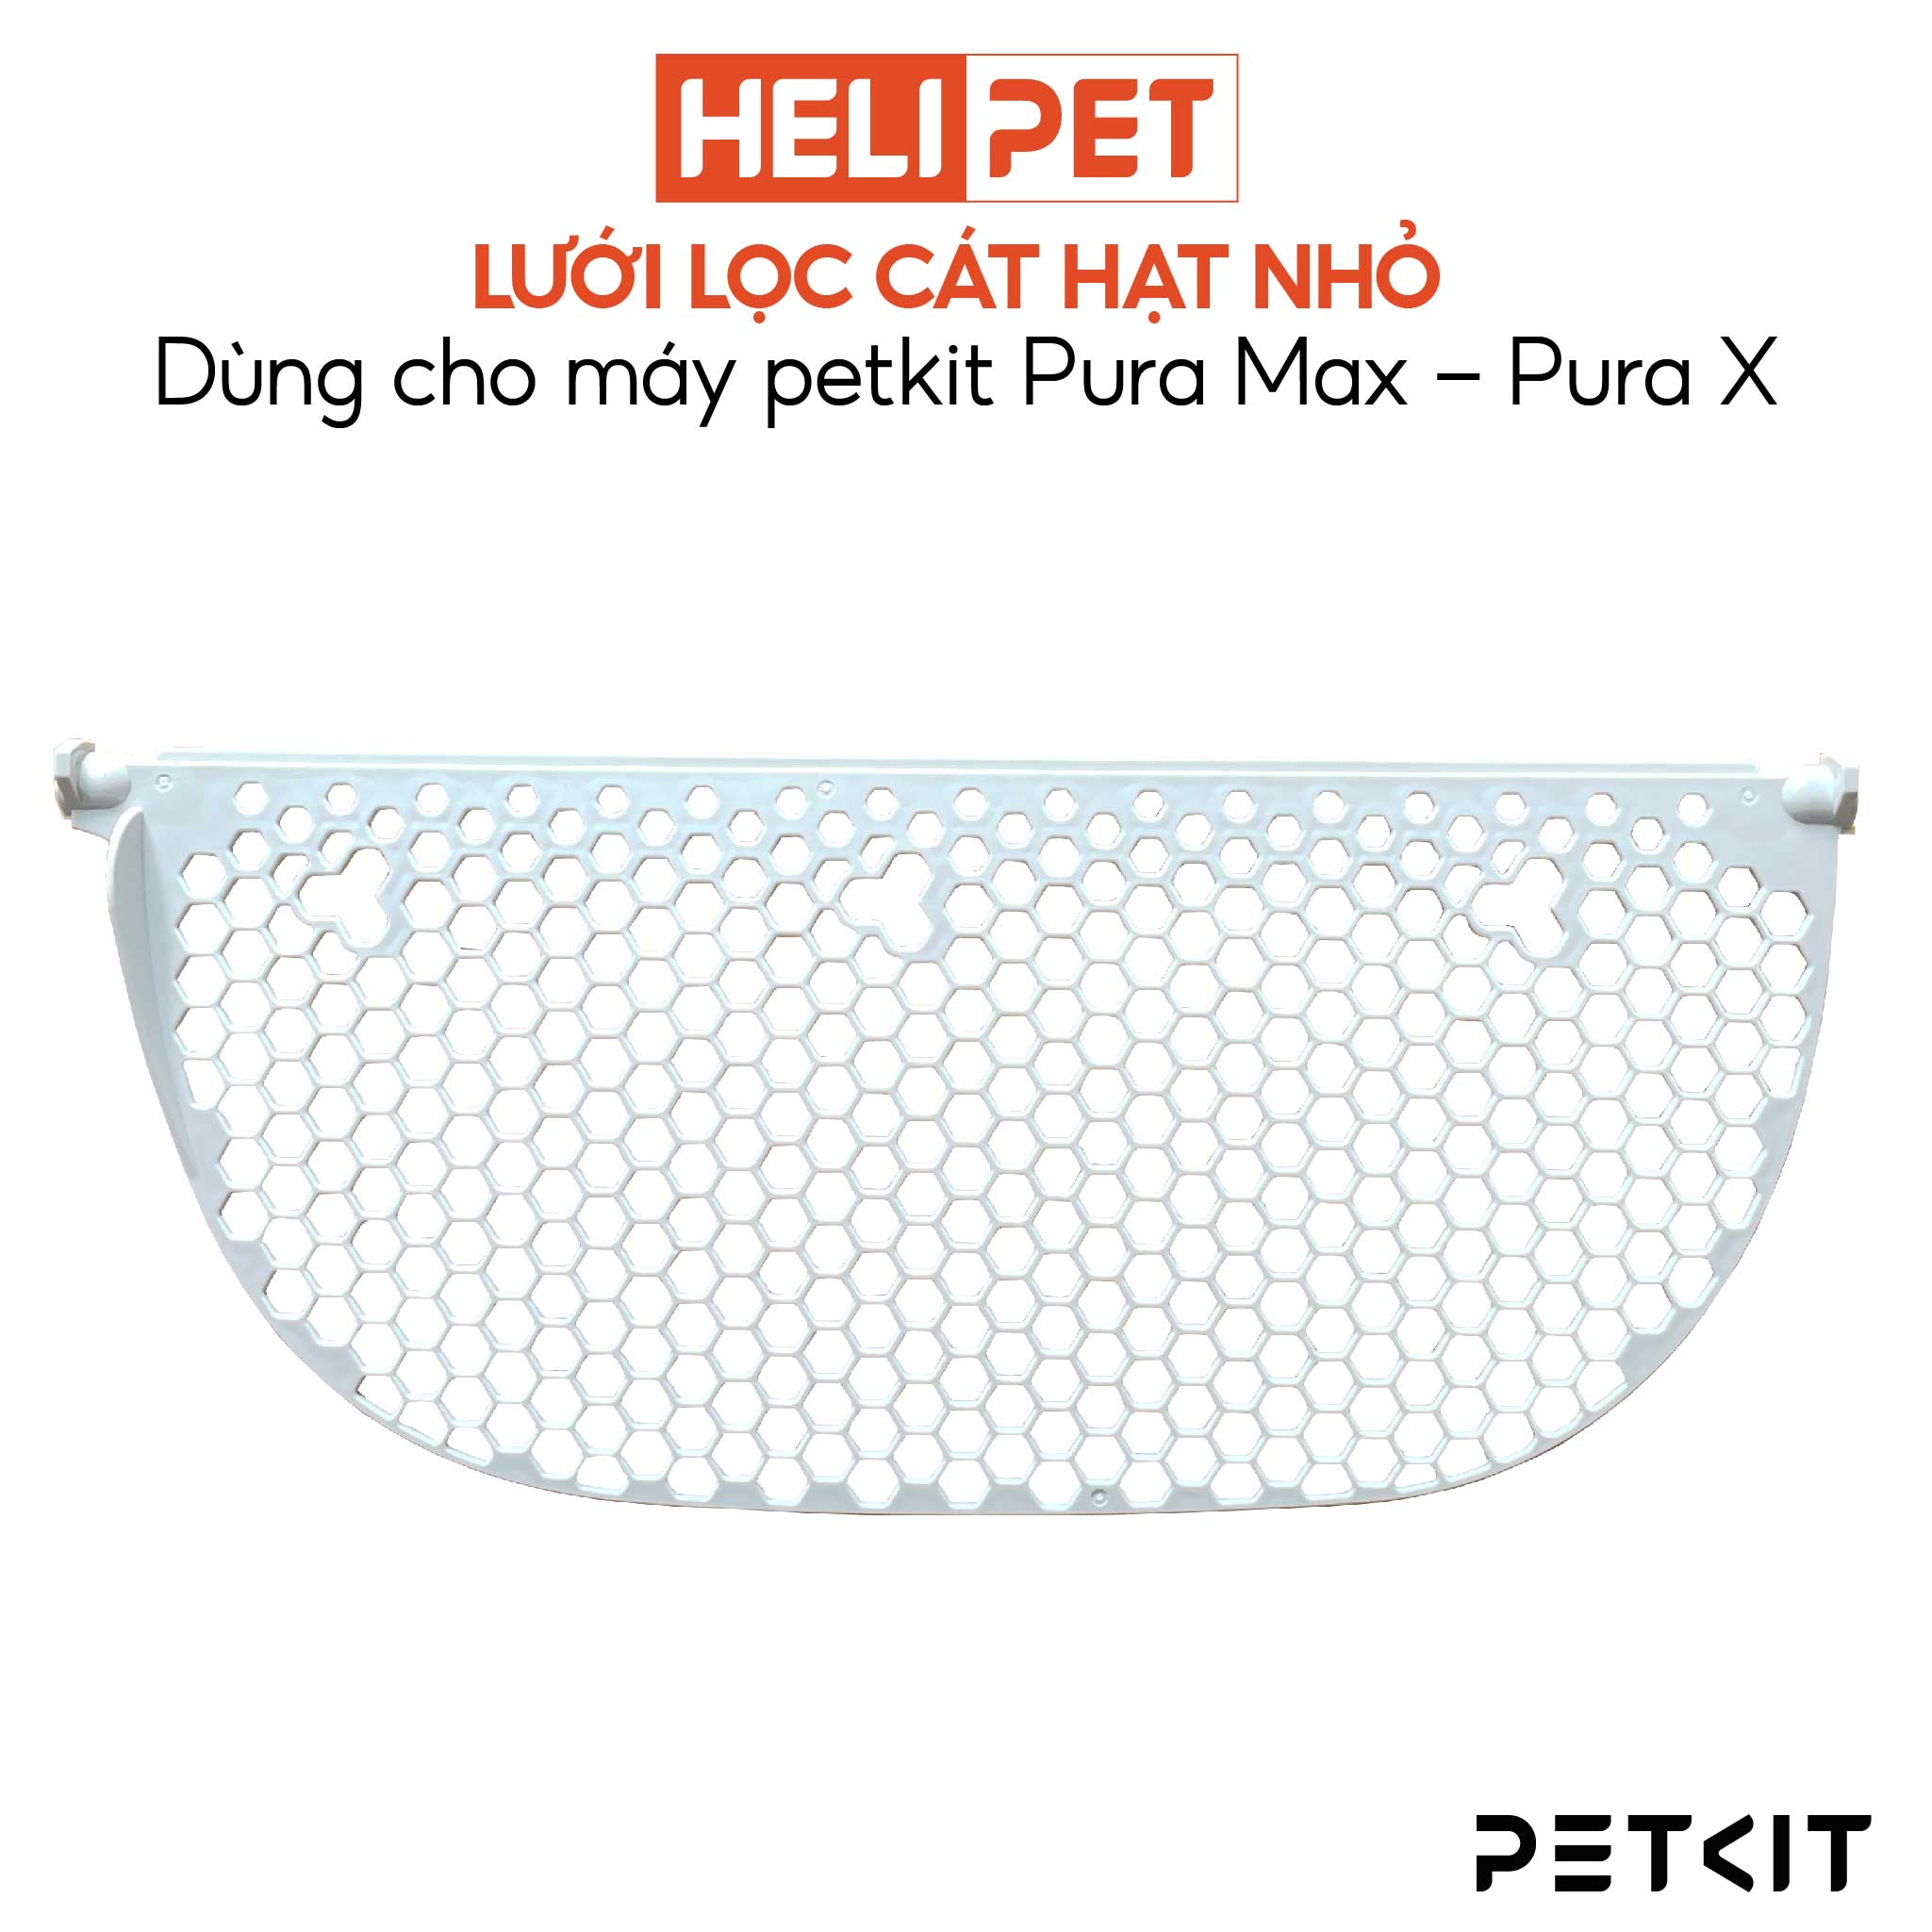 Lưới lọc cát mèo hạt nhỏ dùng cho máy dọn vệ sinh PETKIT Pura Max, Pura X với cát khoáng, cát đậu hạt nhuyễn - HeLiPet